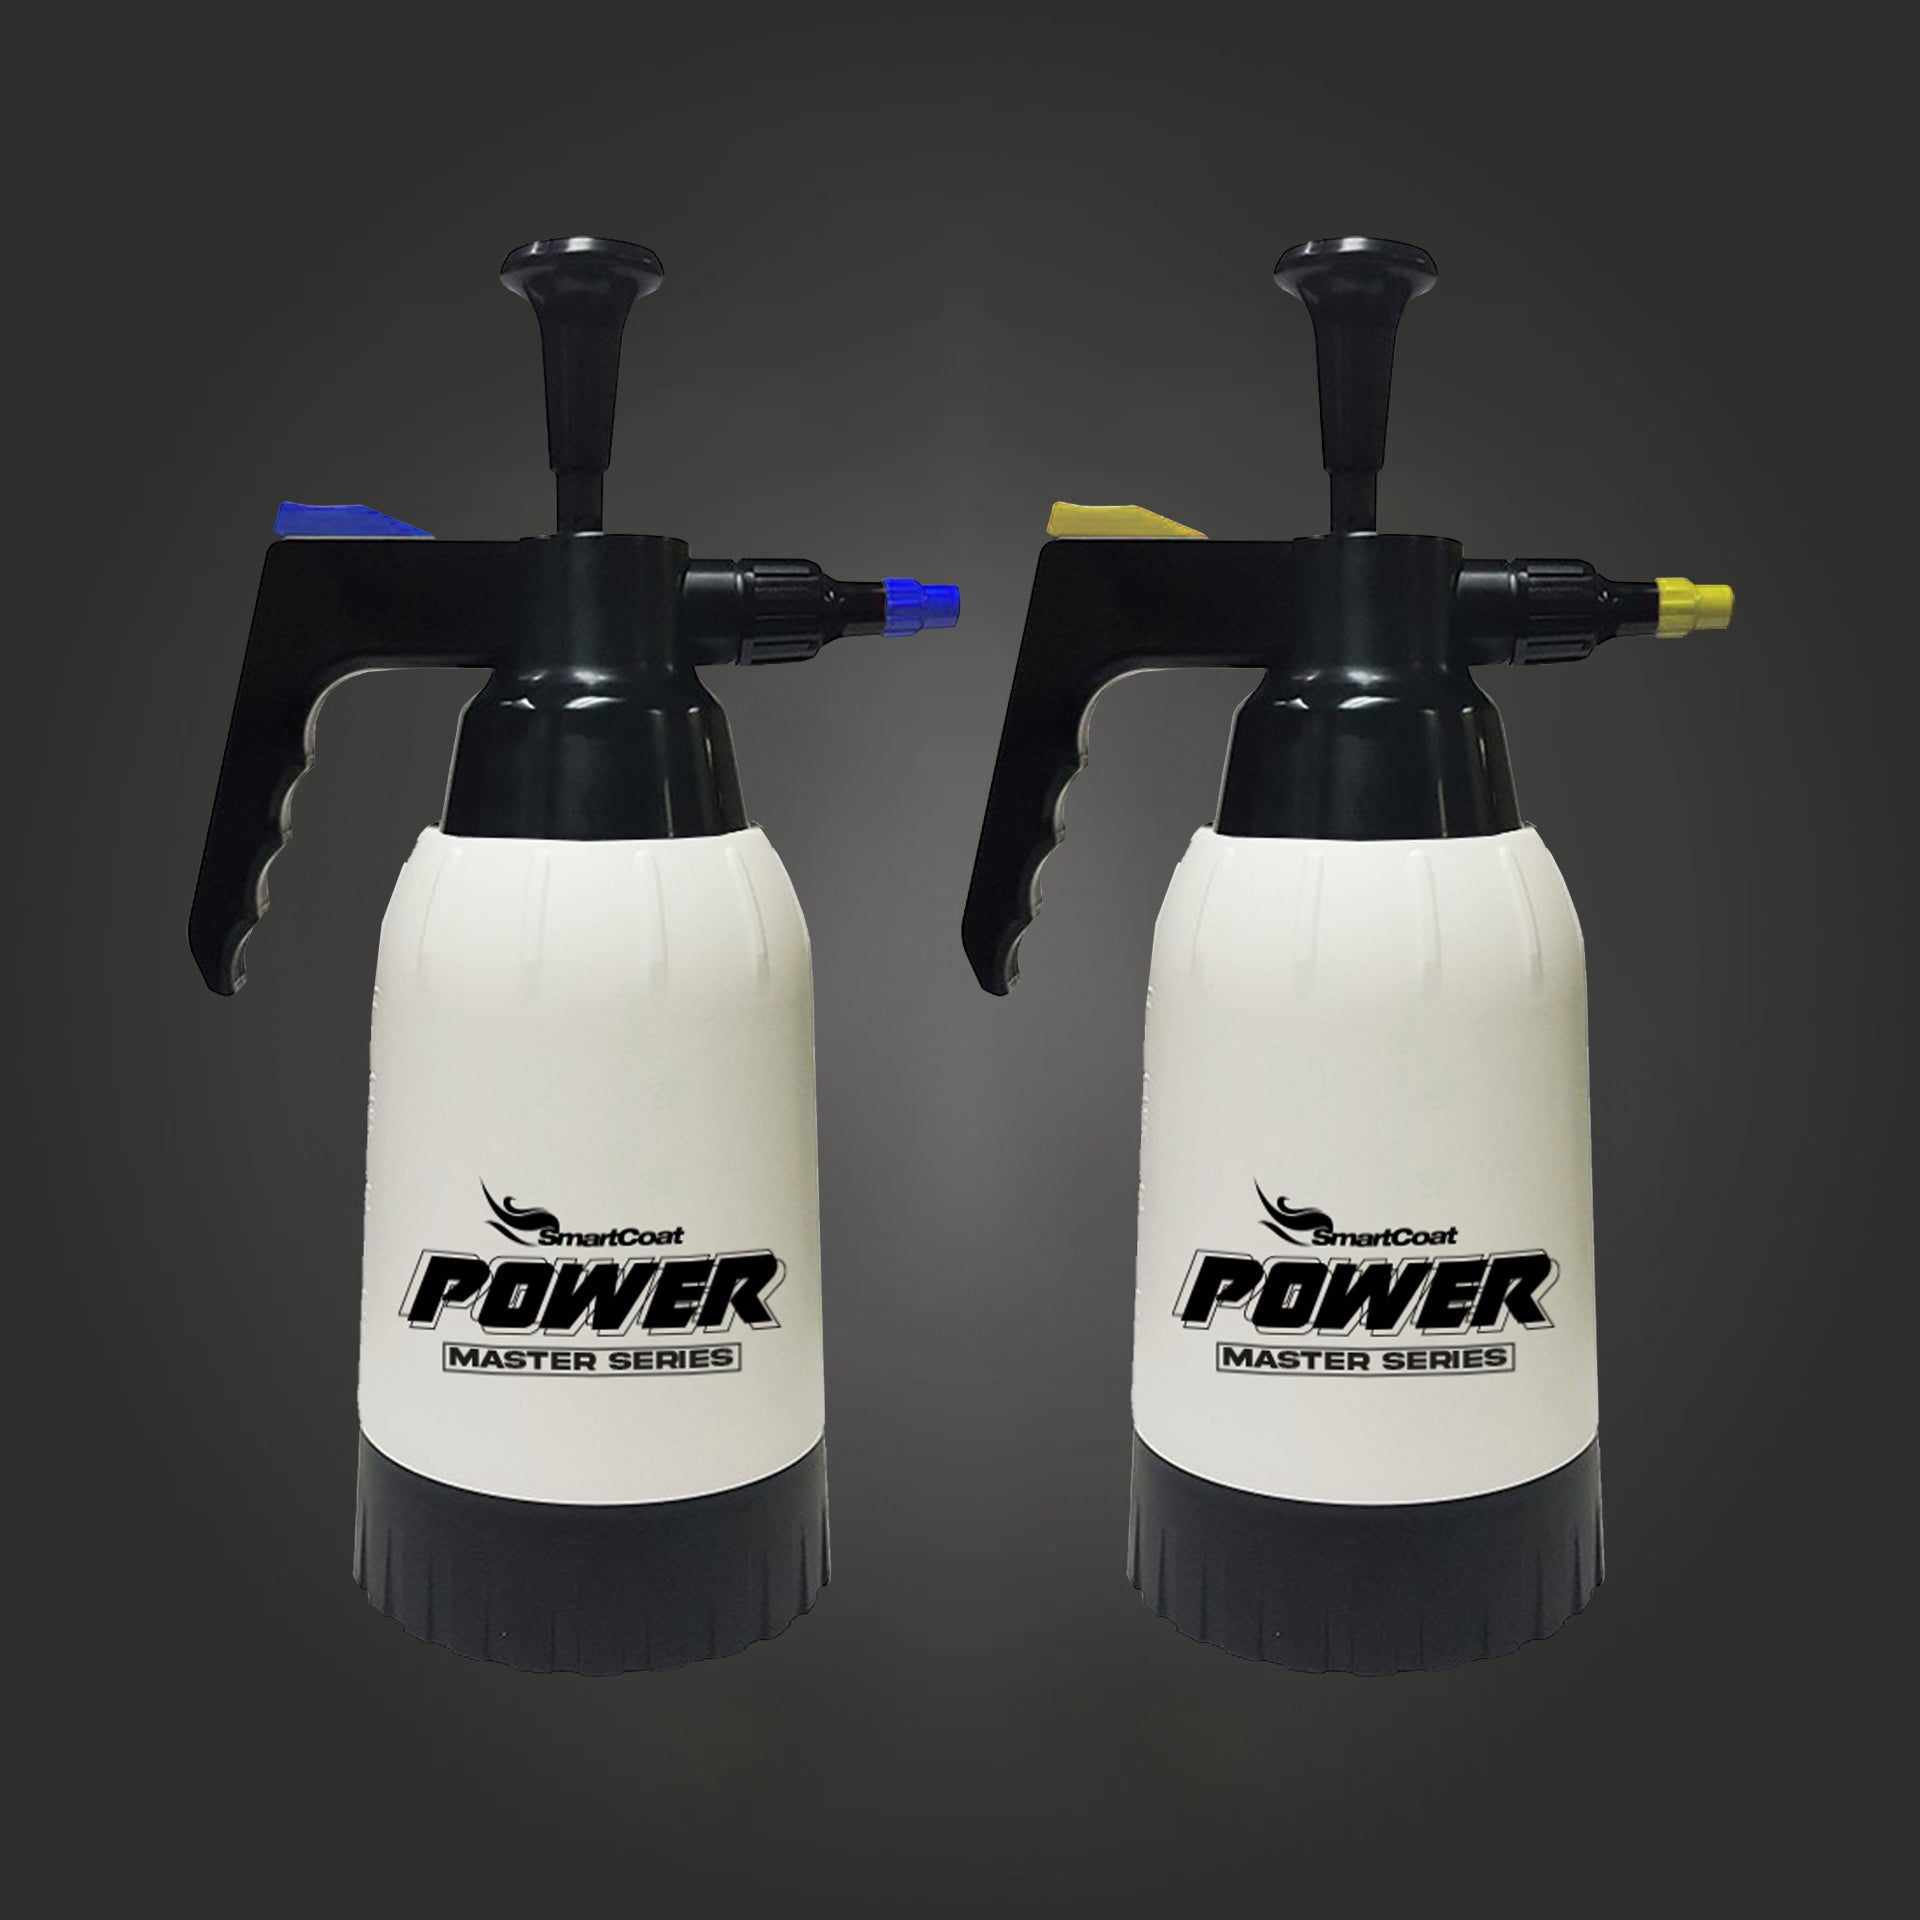 Smartcoat Power Master Series Druckspüher